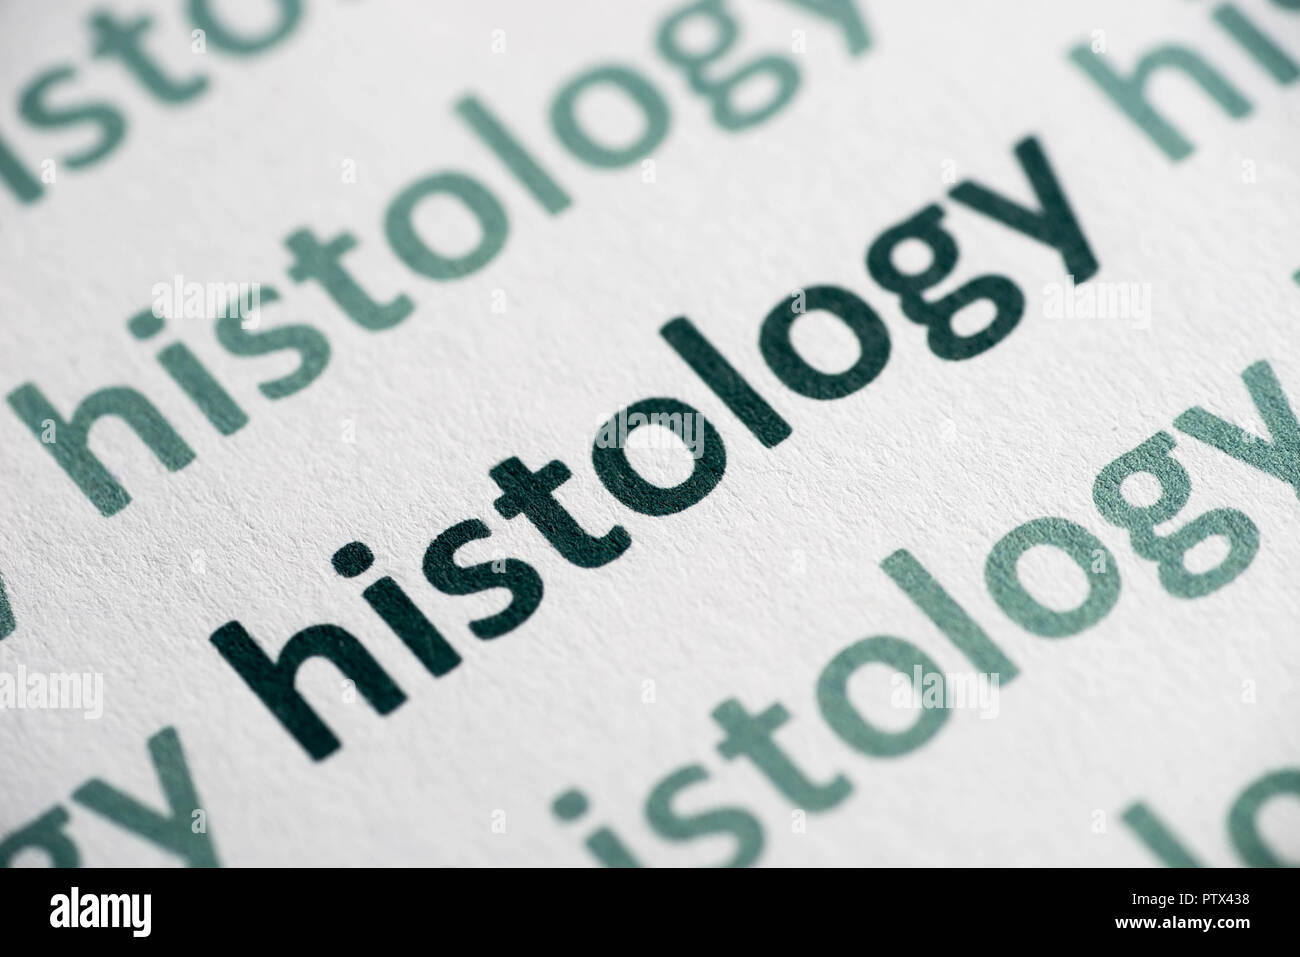 La histología de la palabra impresa sobre papel blanco macro Foto de stock